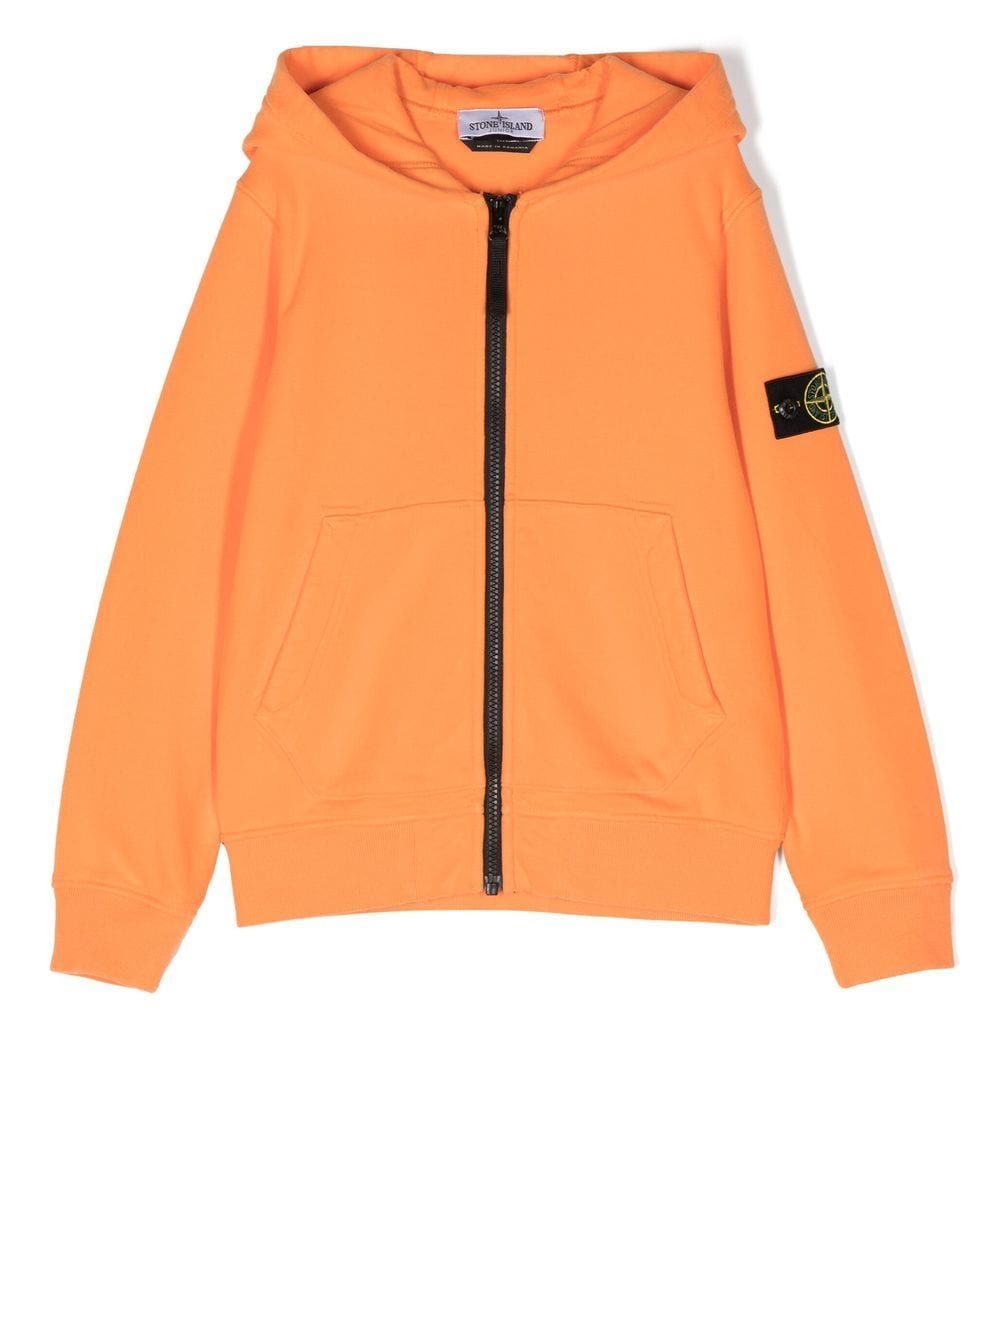 

Stone Island Junior hoodie con parche del logo y cierre - Naranja